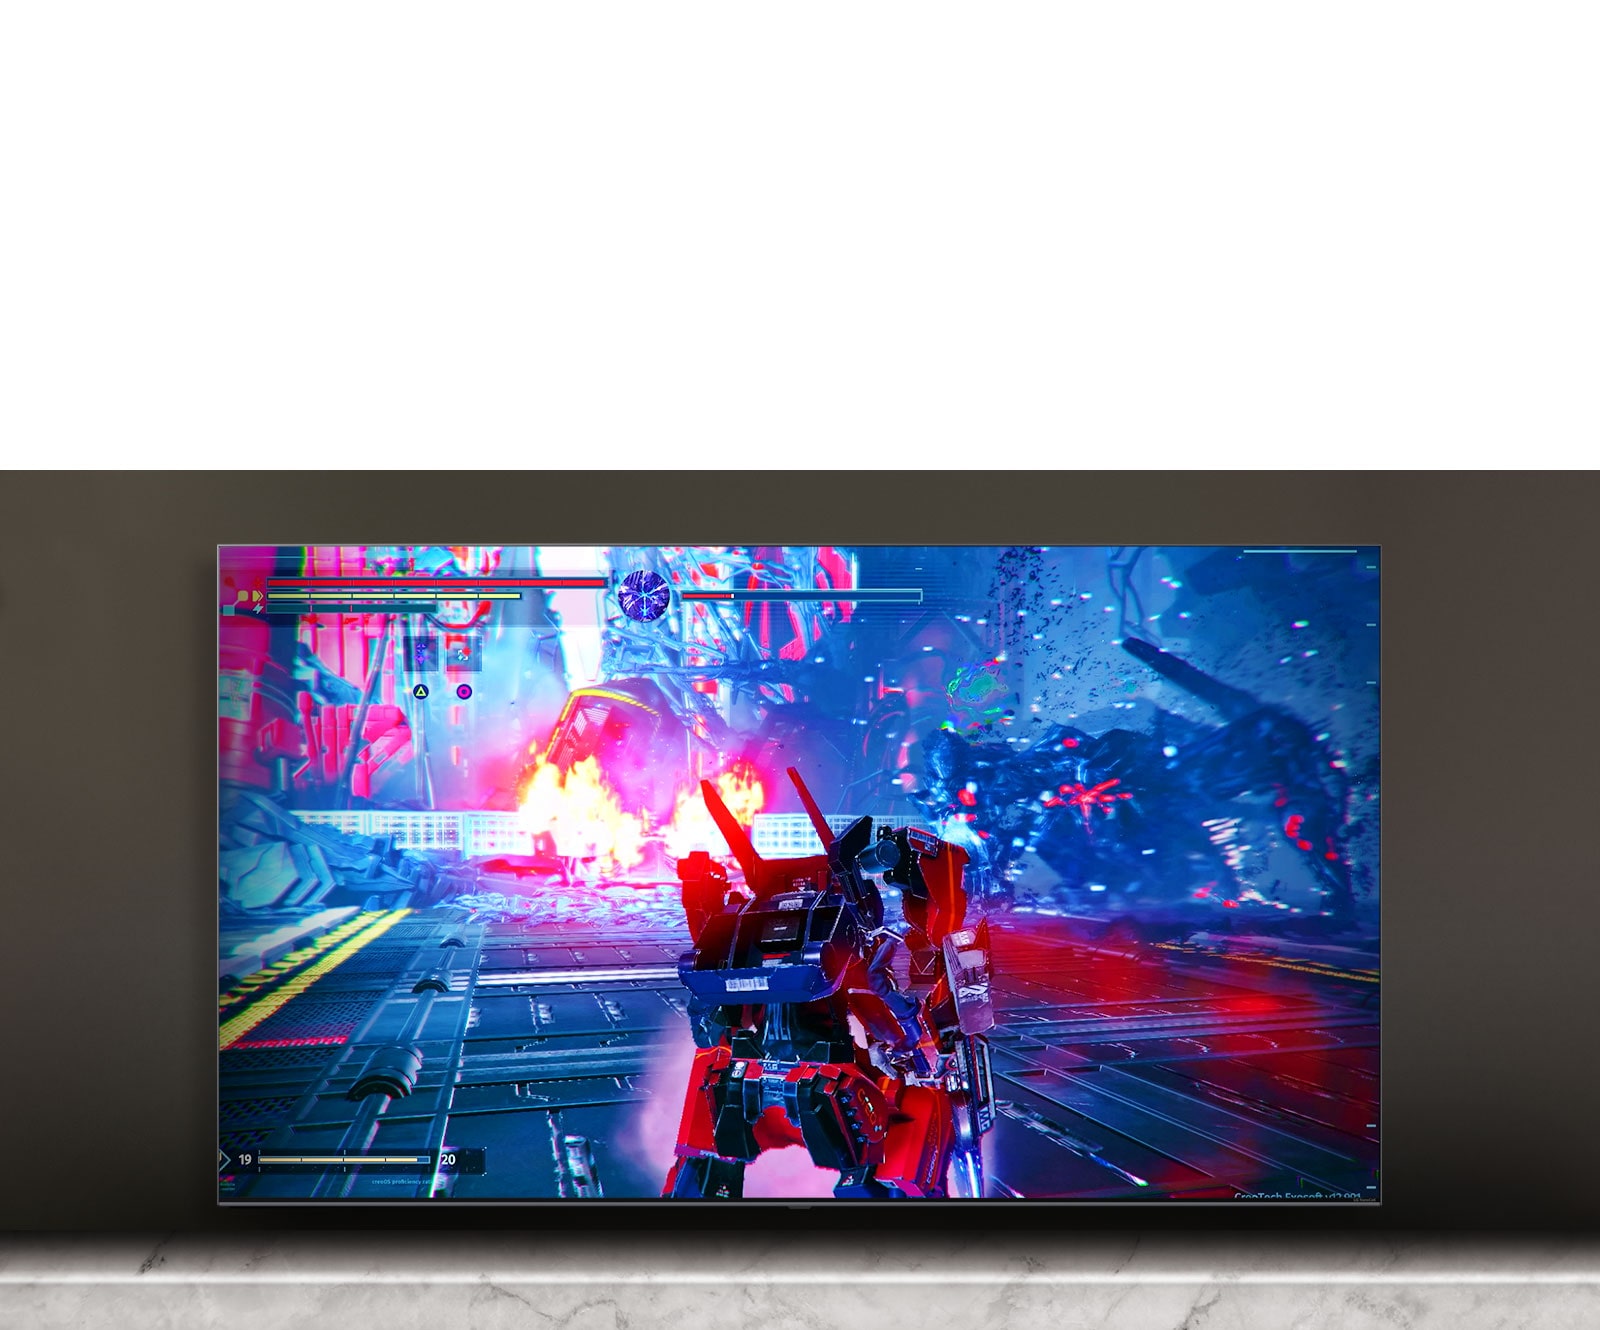 La pantalla del televisor muestra la escena del juego de batallas.